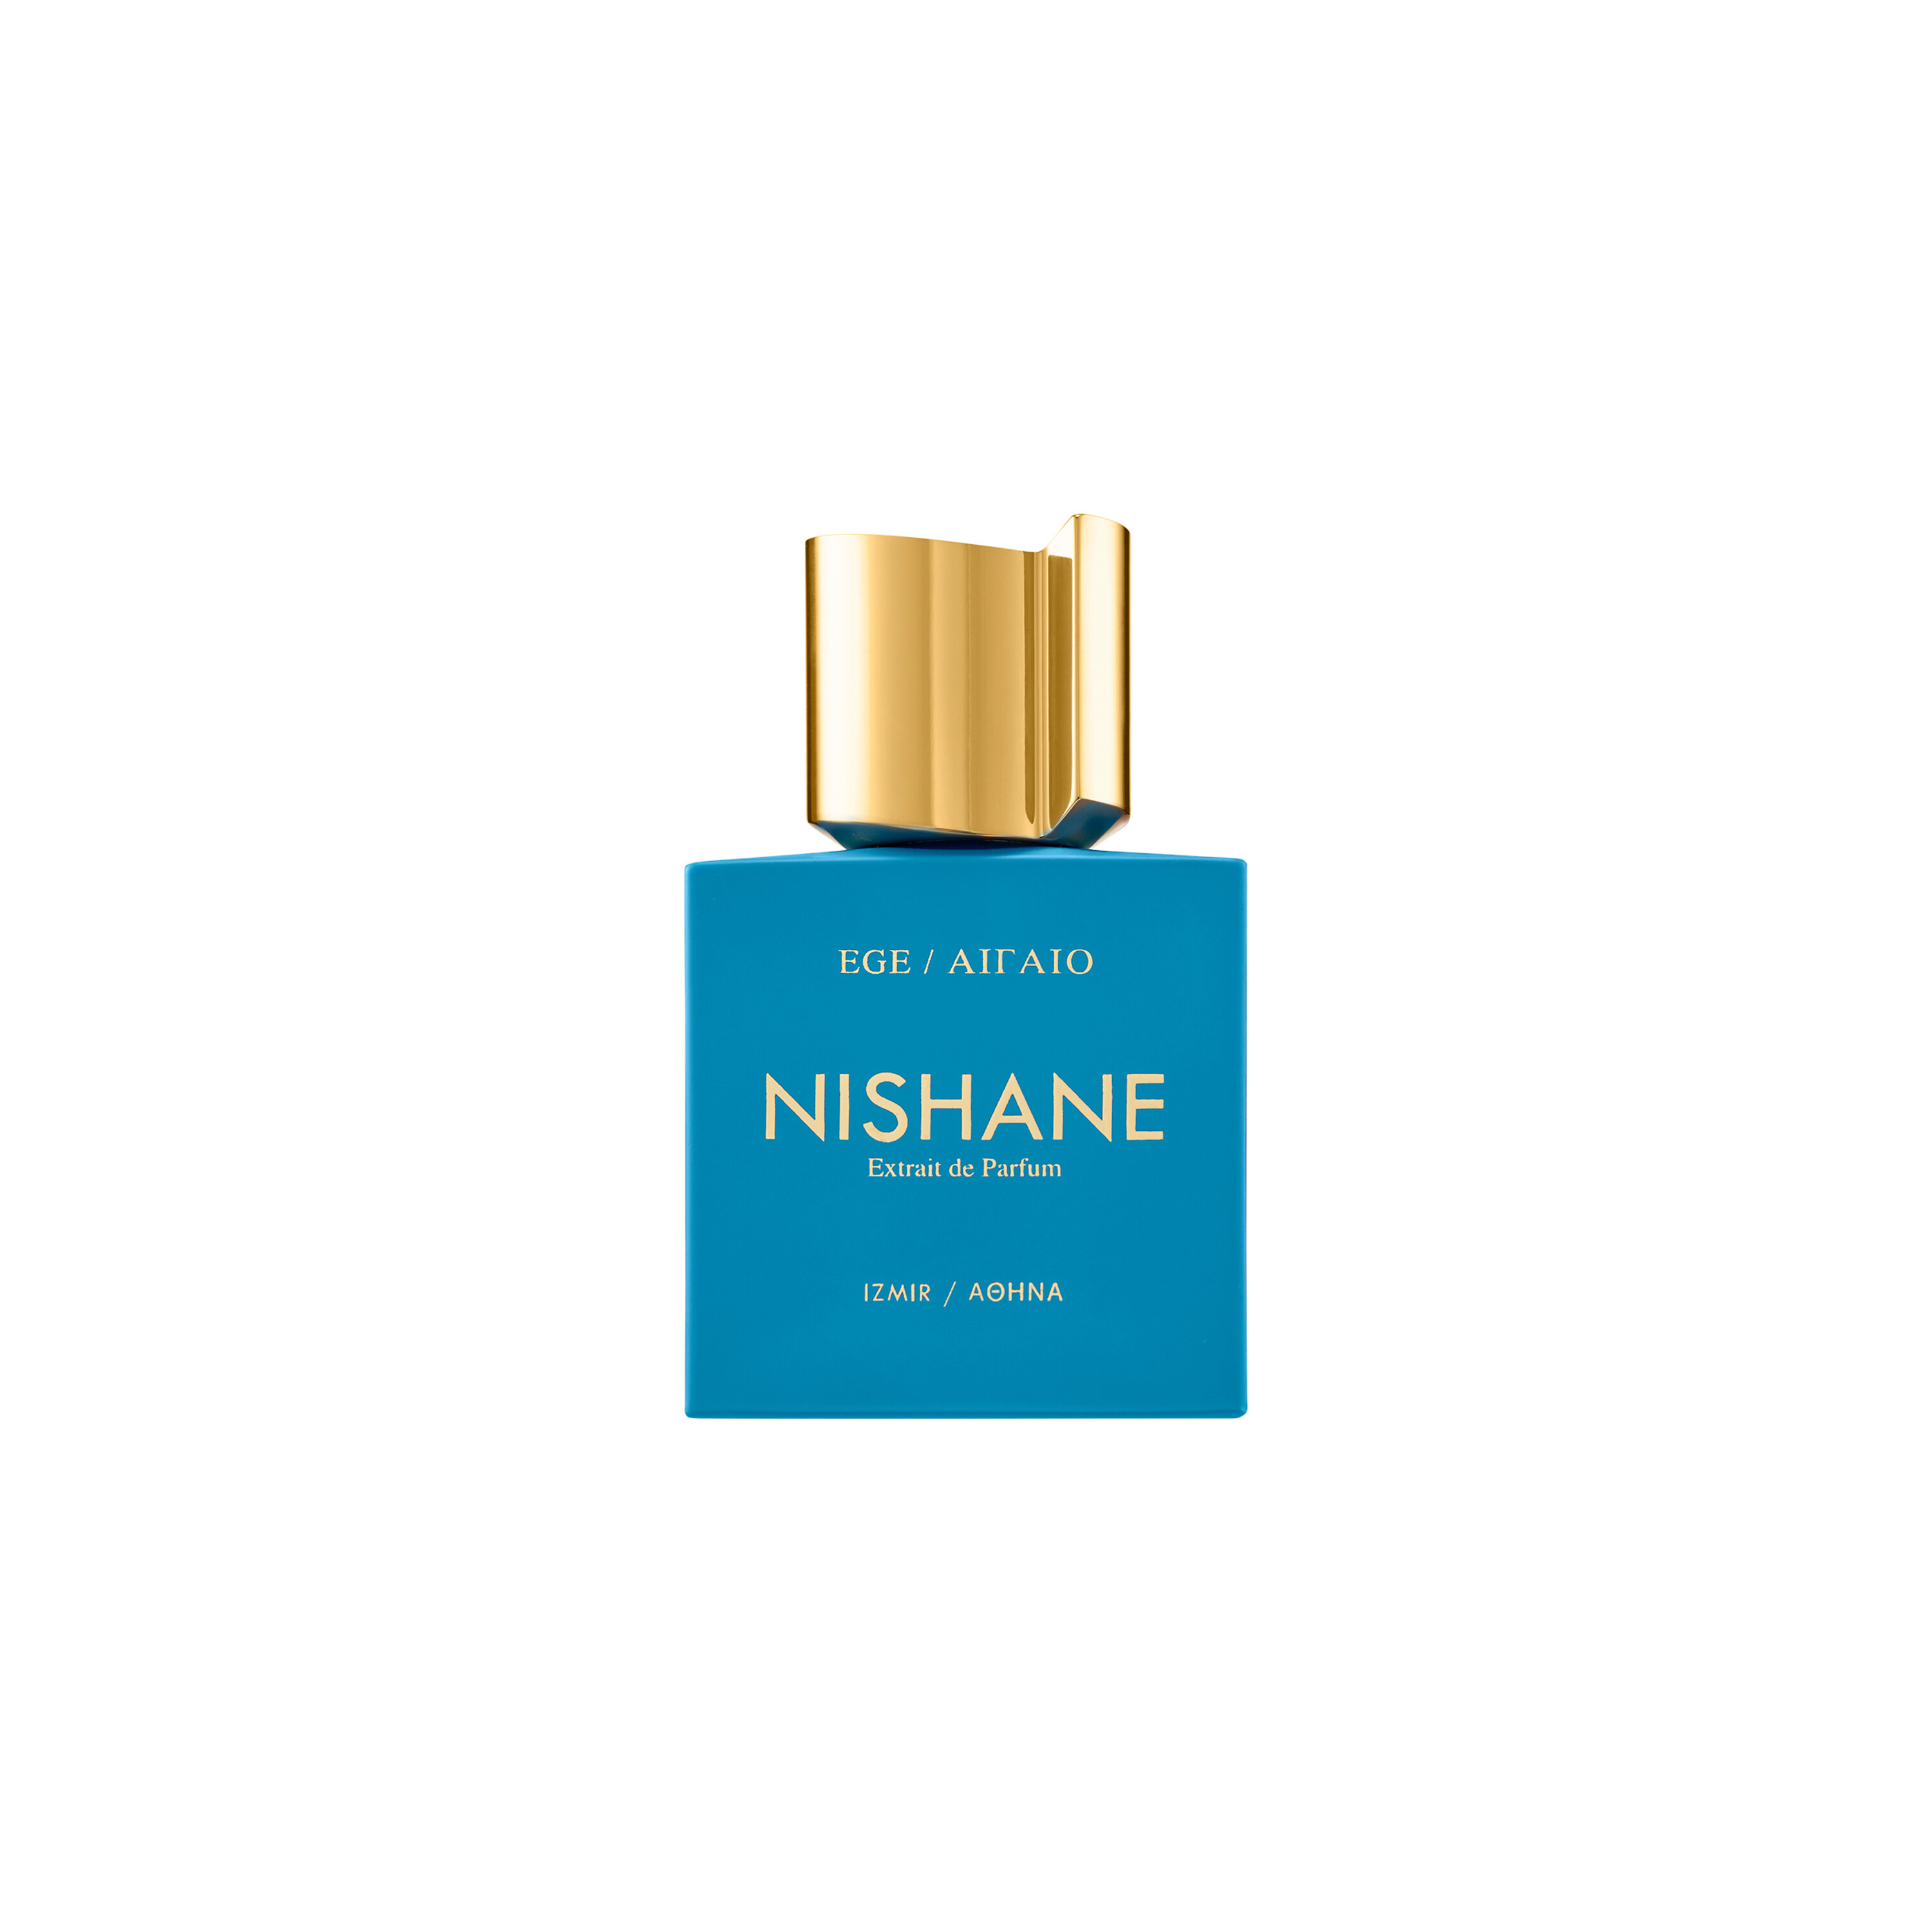 NISHANE Ege ΑΙΓΑΙΟ Extrait de Parfum 50ml